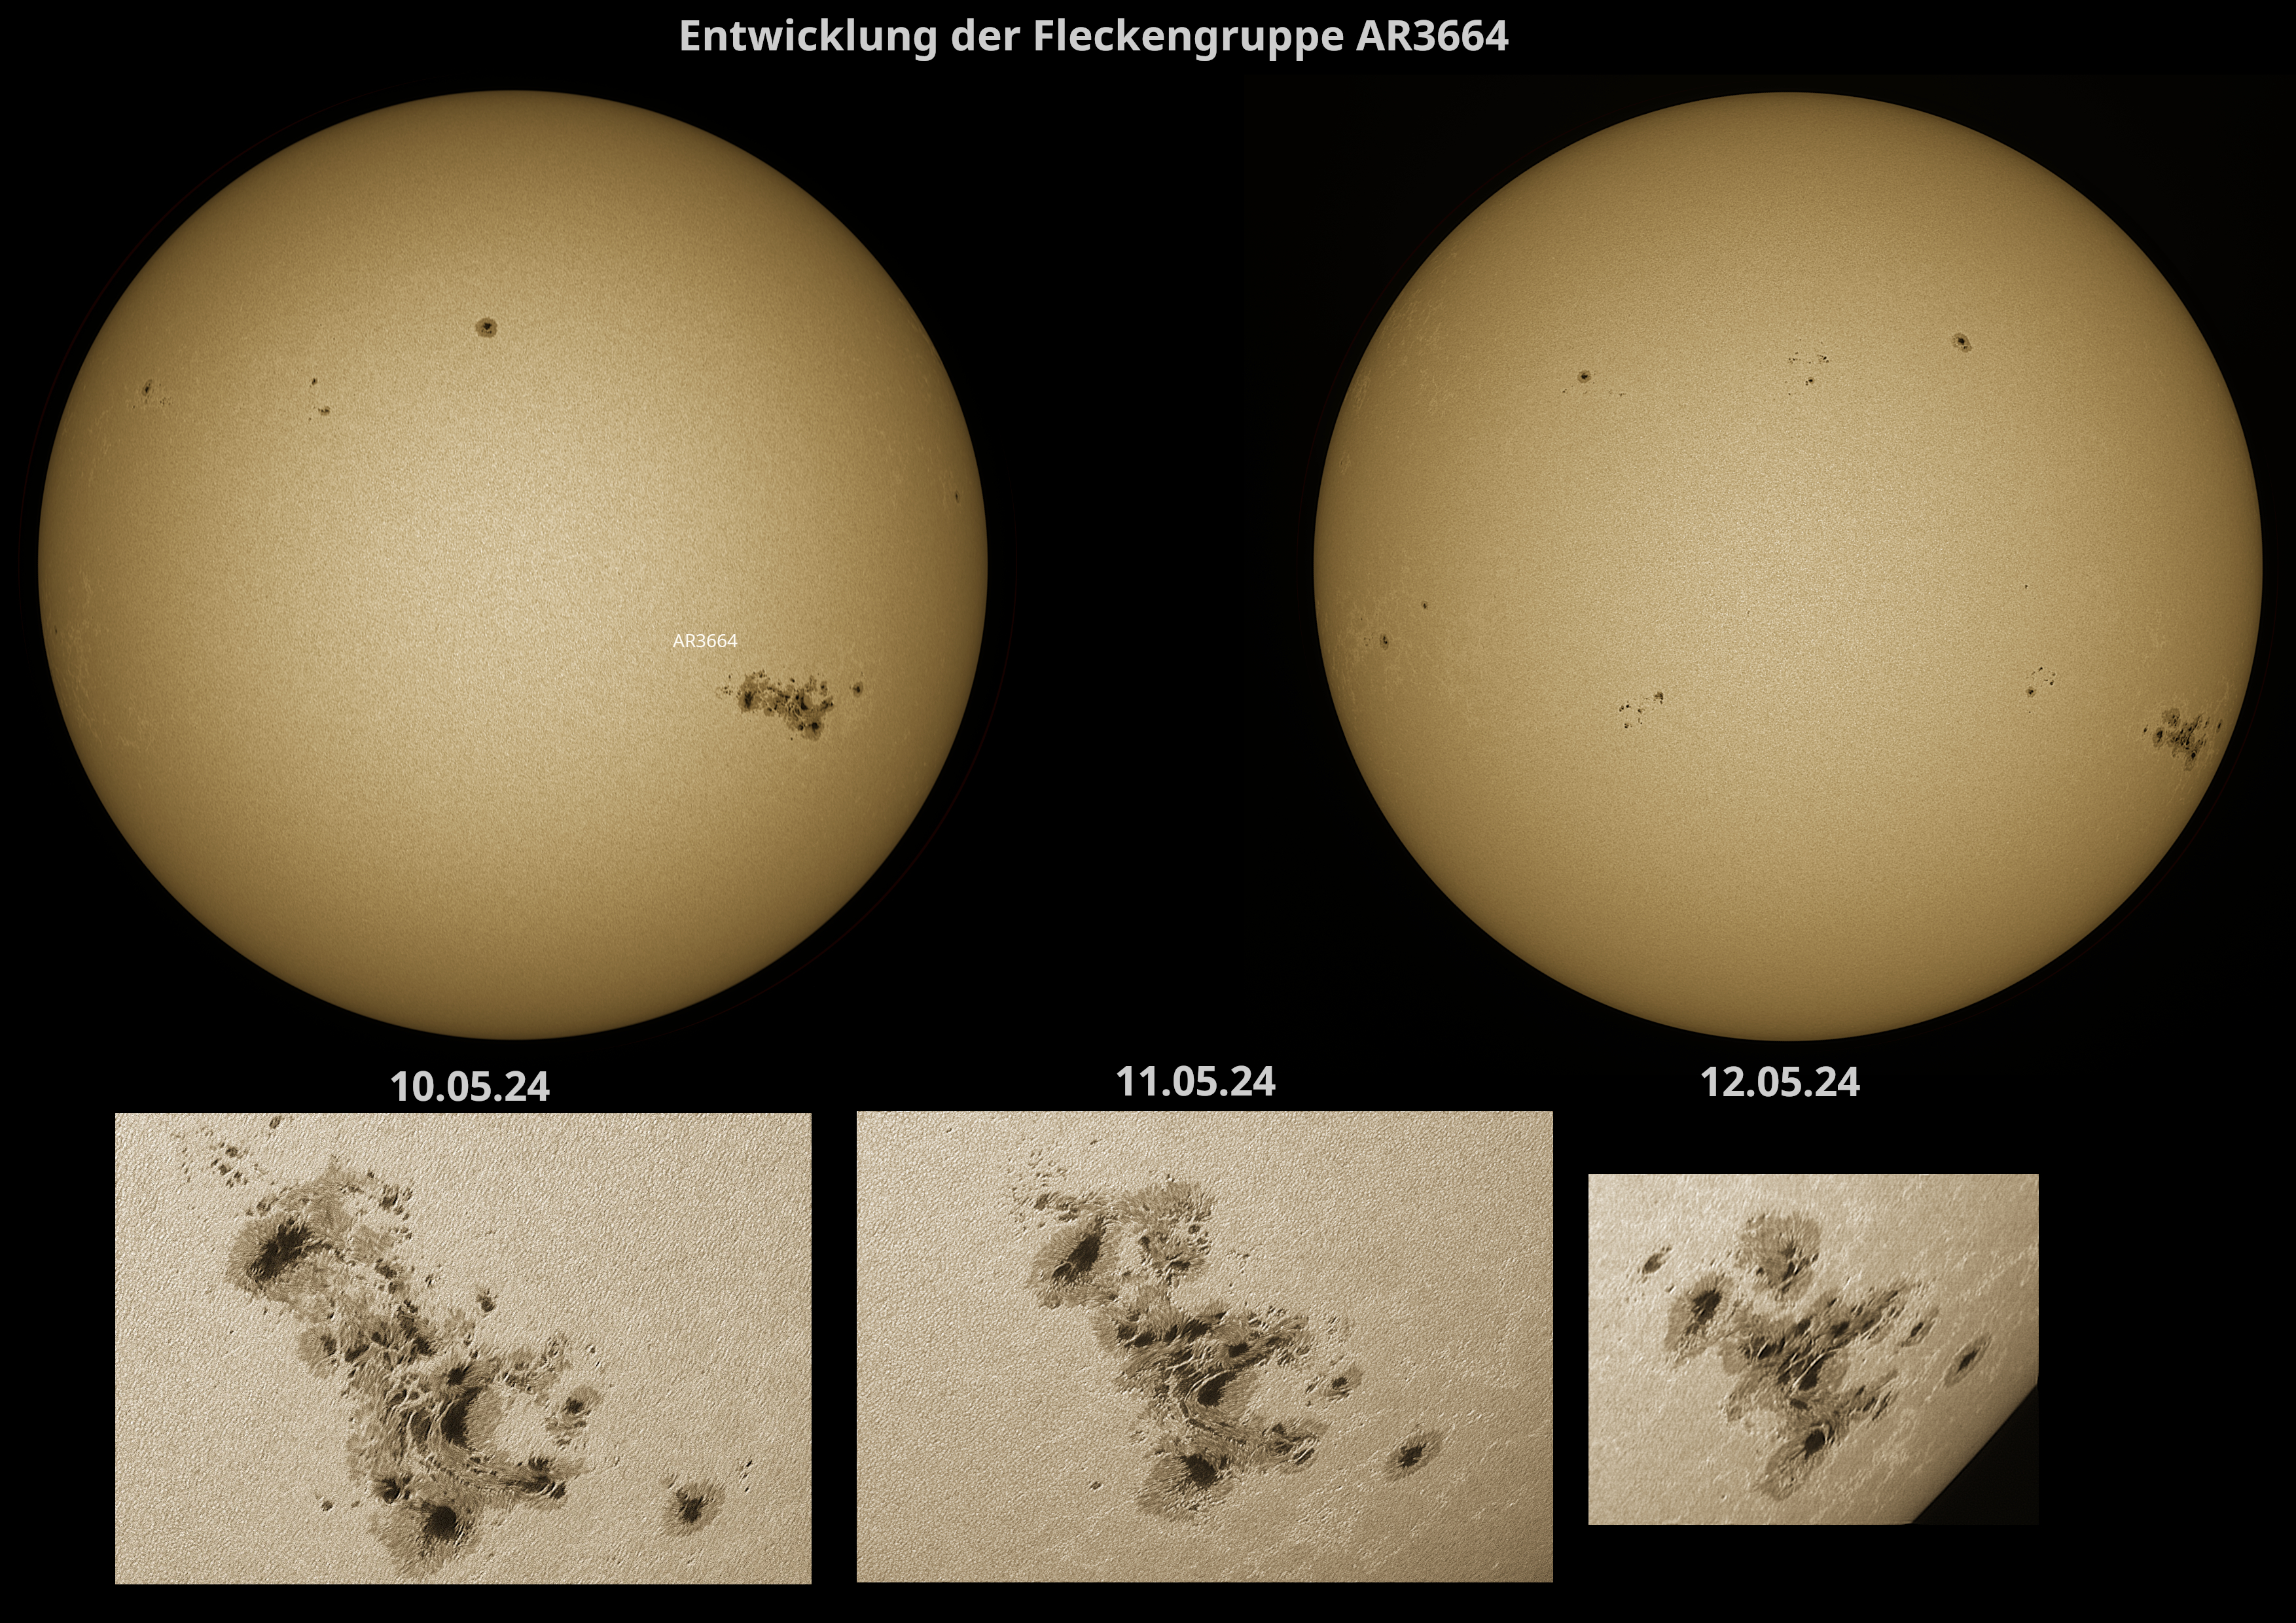 Sonne mit Fleckengruppe AR3664